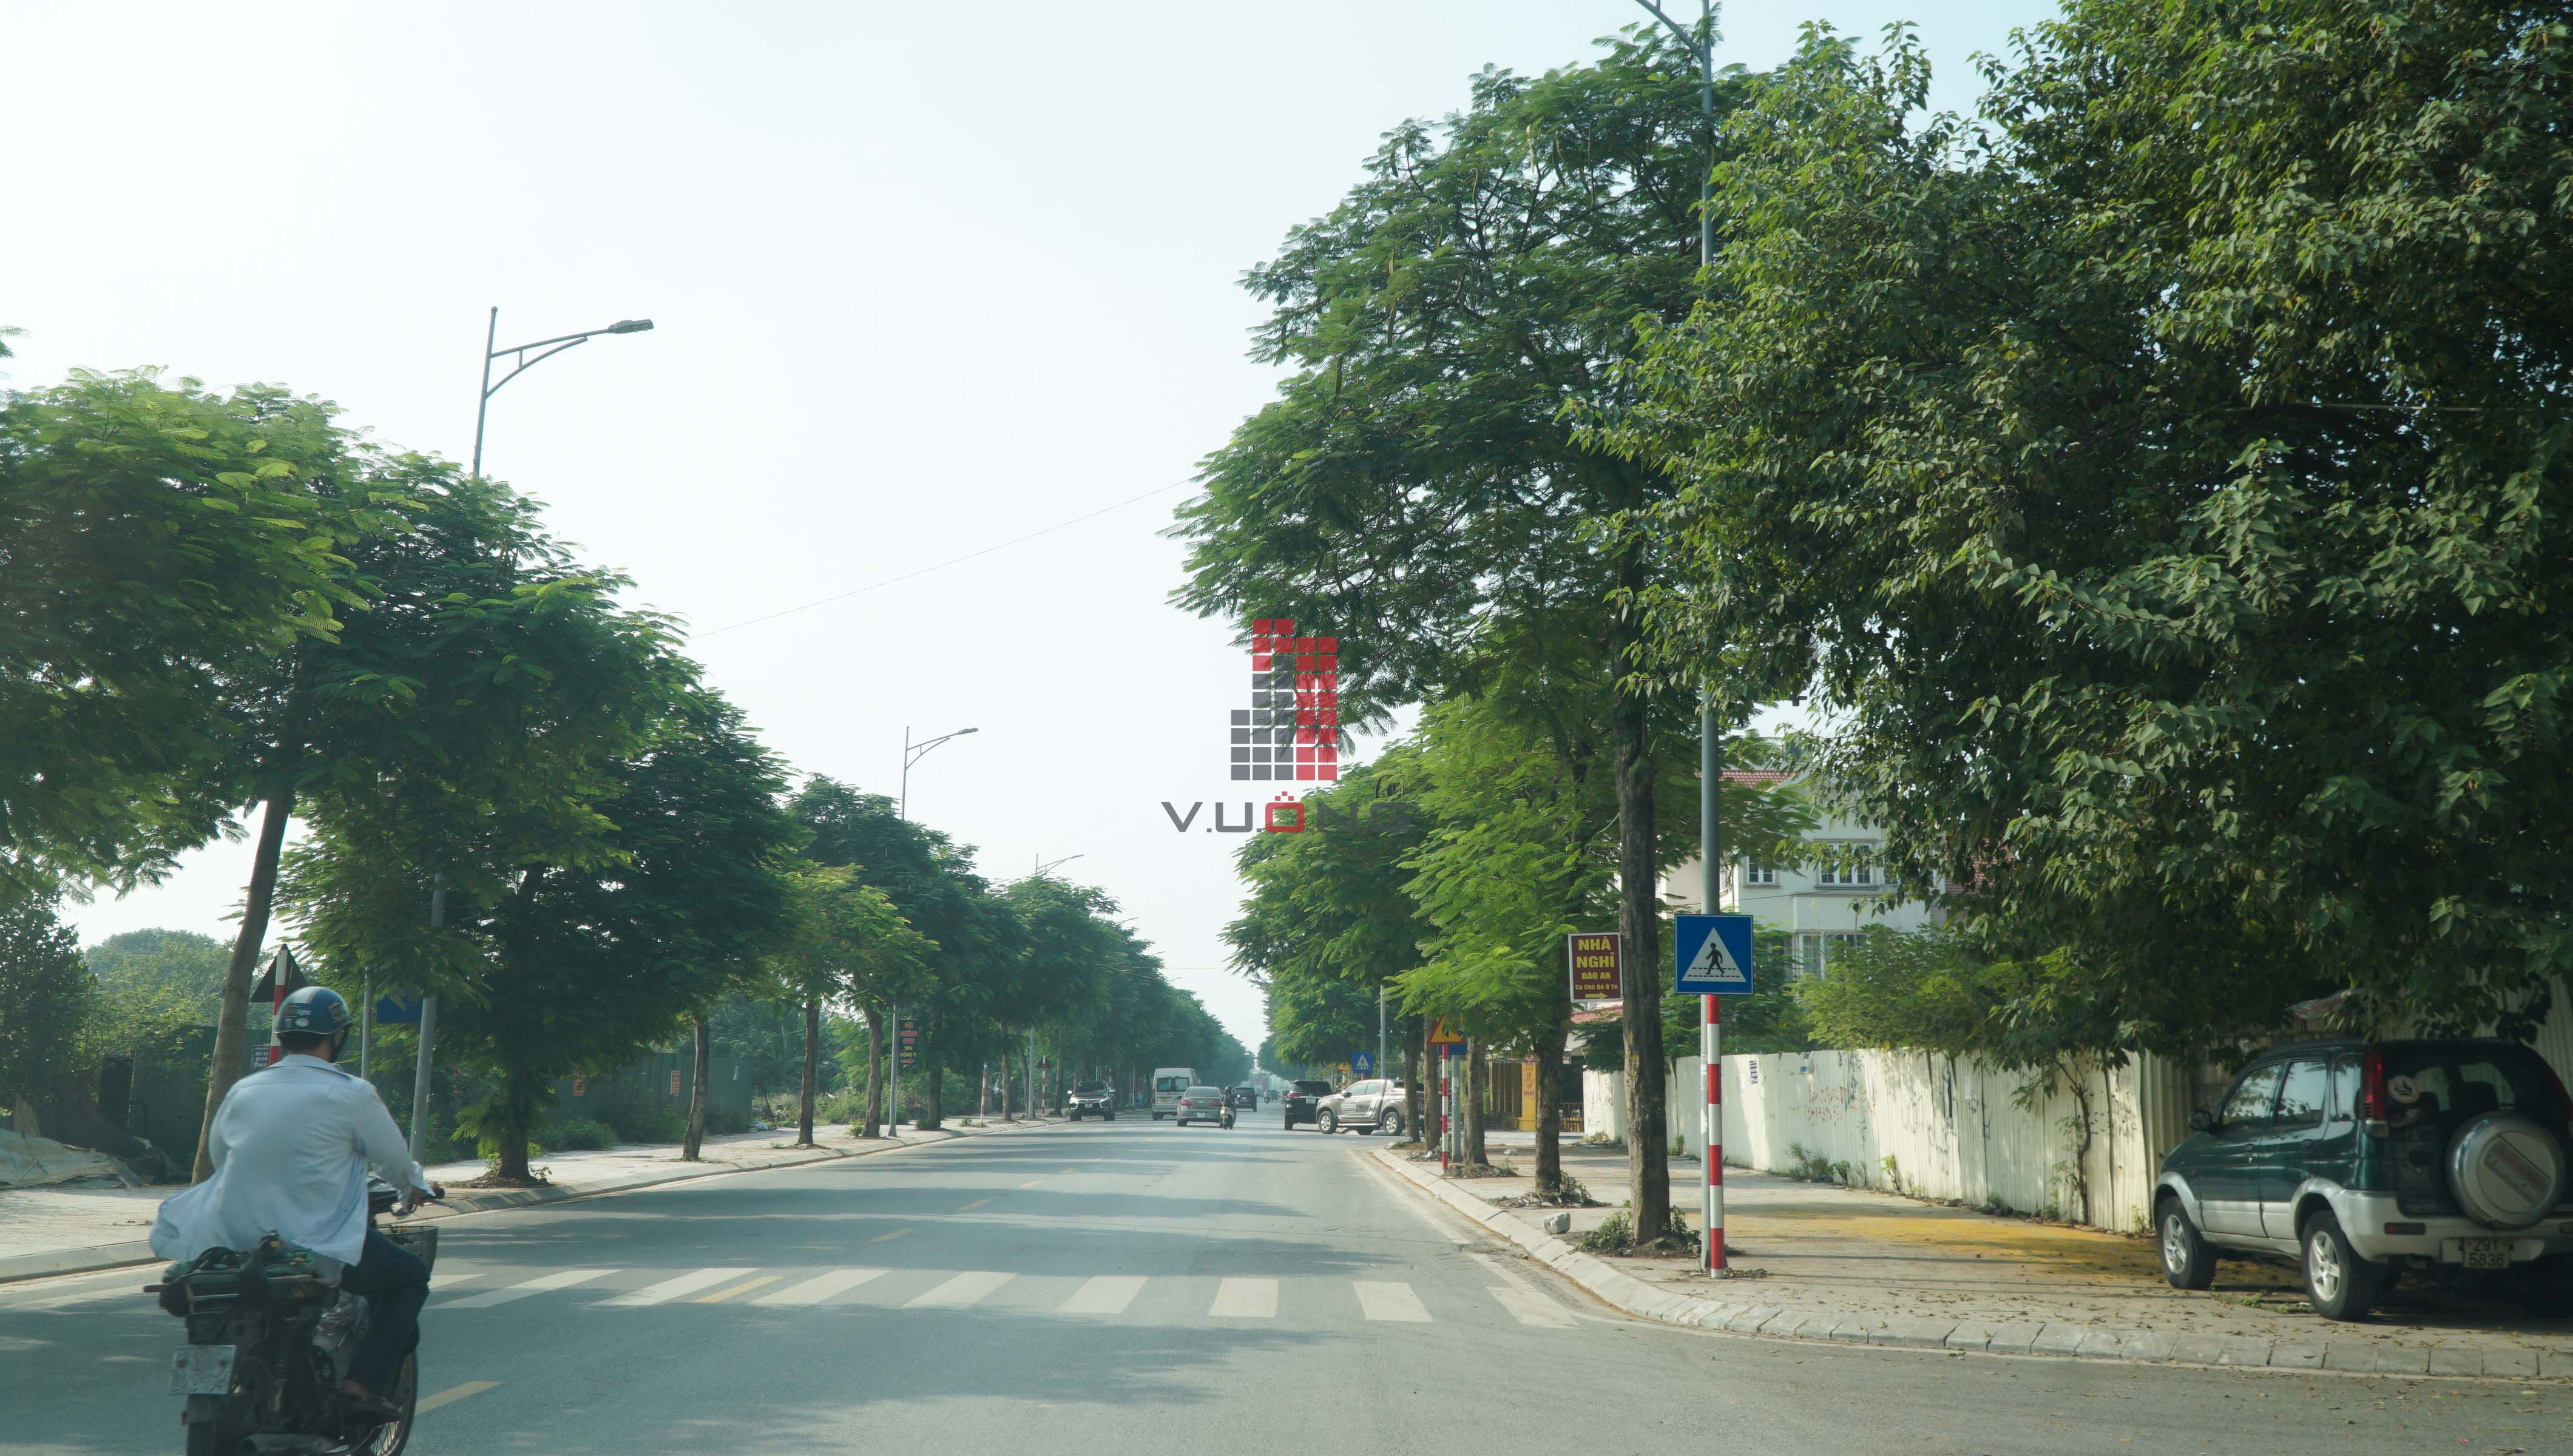 Bán nhà Liền kề phân khu LKCVP, mặt đường 24m, nhà hướng Bắc, Khu đô thị Văn Phú [#H4156.2921]